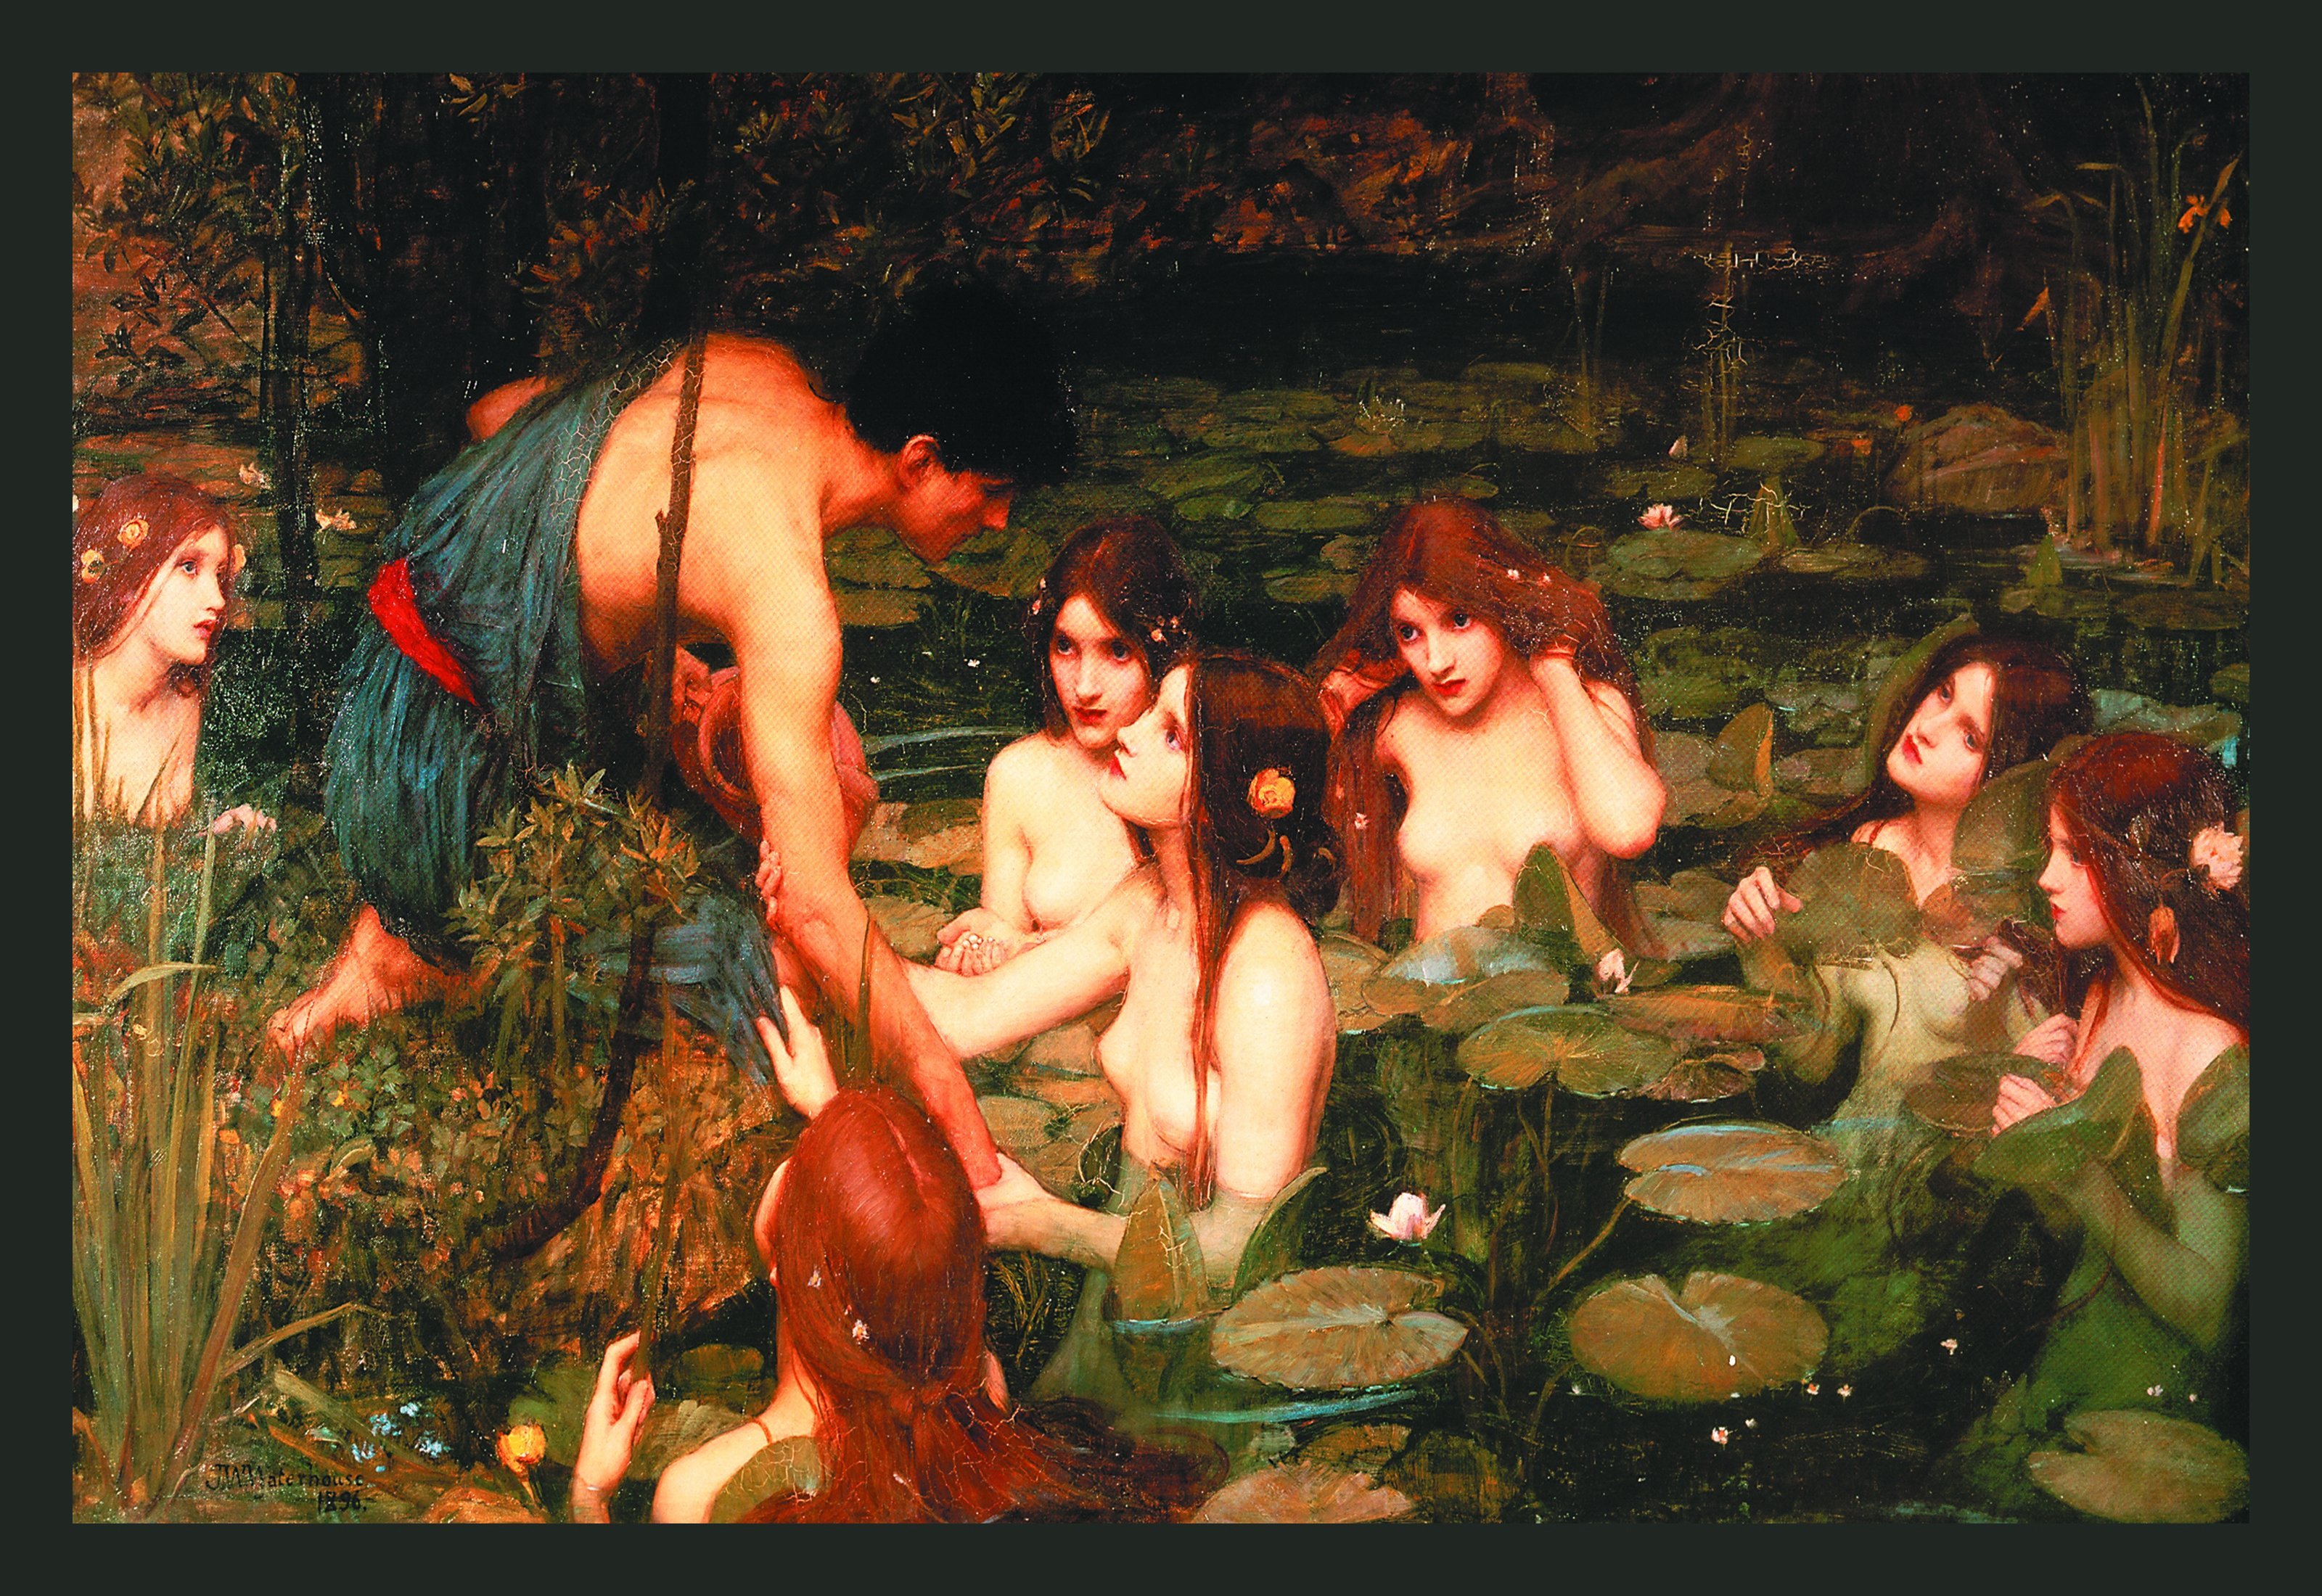 MeToo受け、女性の裸が描かれた油絵を一時撤去。イギリスの美術館に批判が殺到「検閲だ」 | ハフポスト WORLD